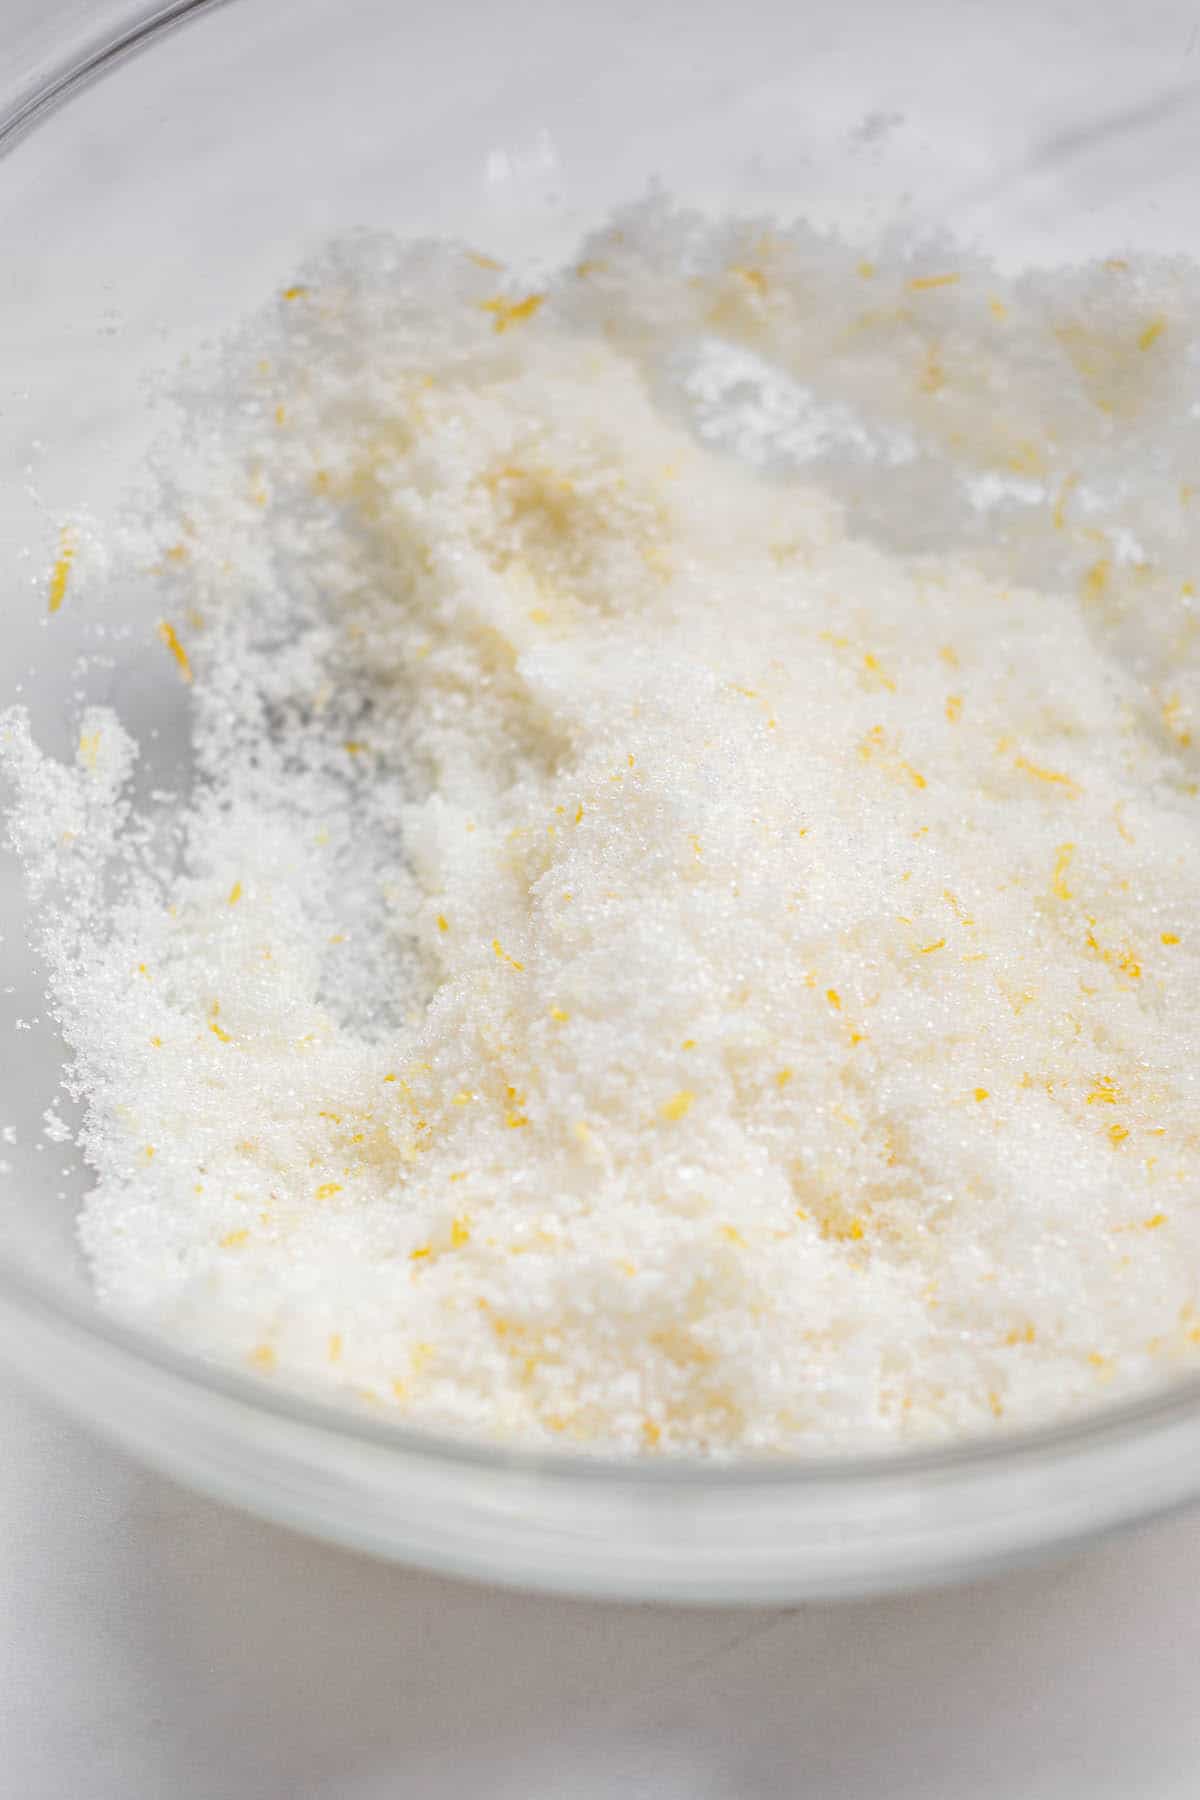 lemon zest rubbed into sugar.